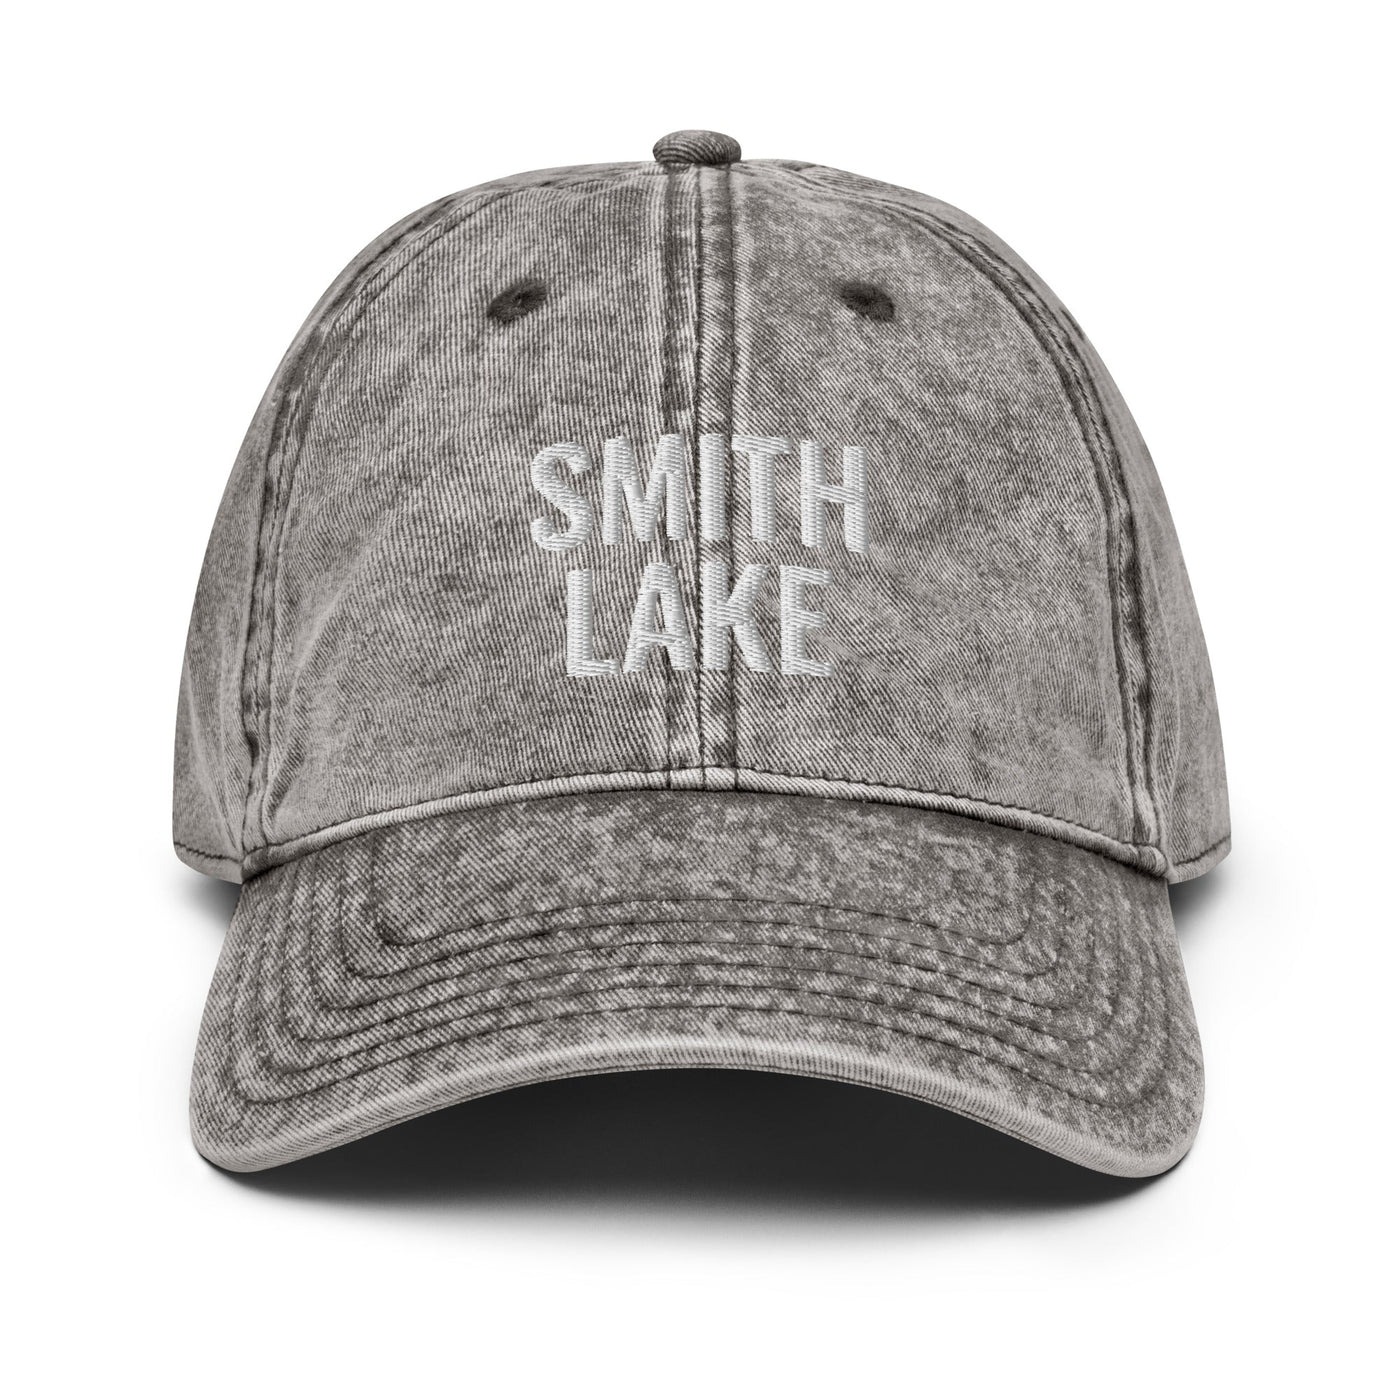 Smith Lake Hat - Ezra's Clothing